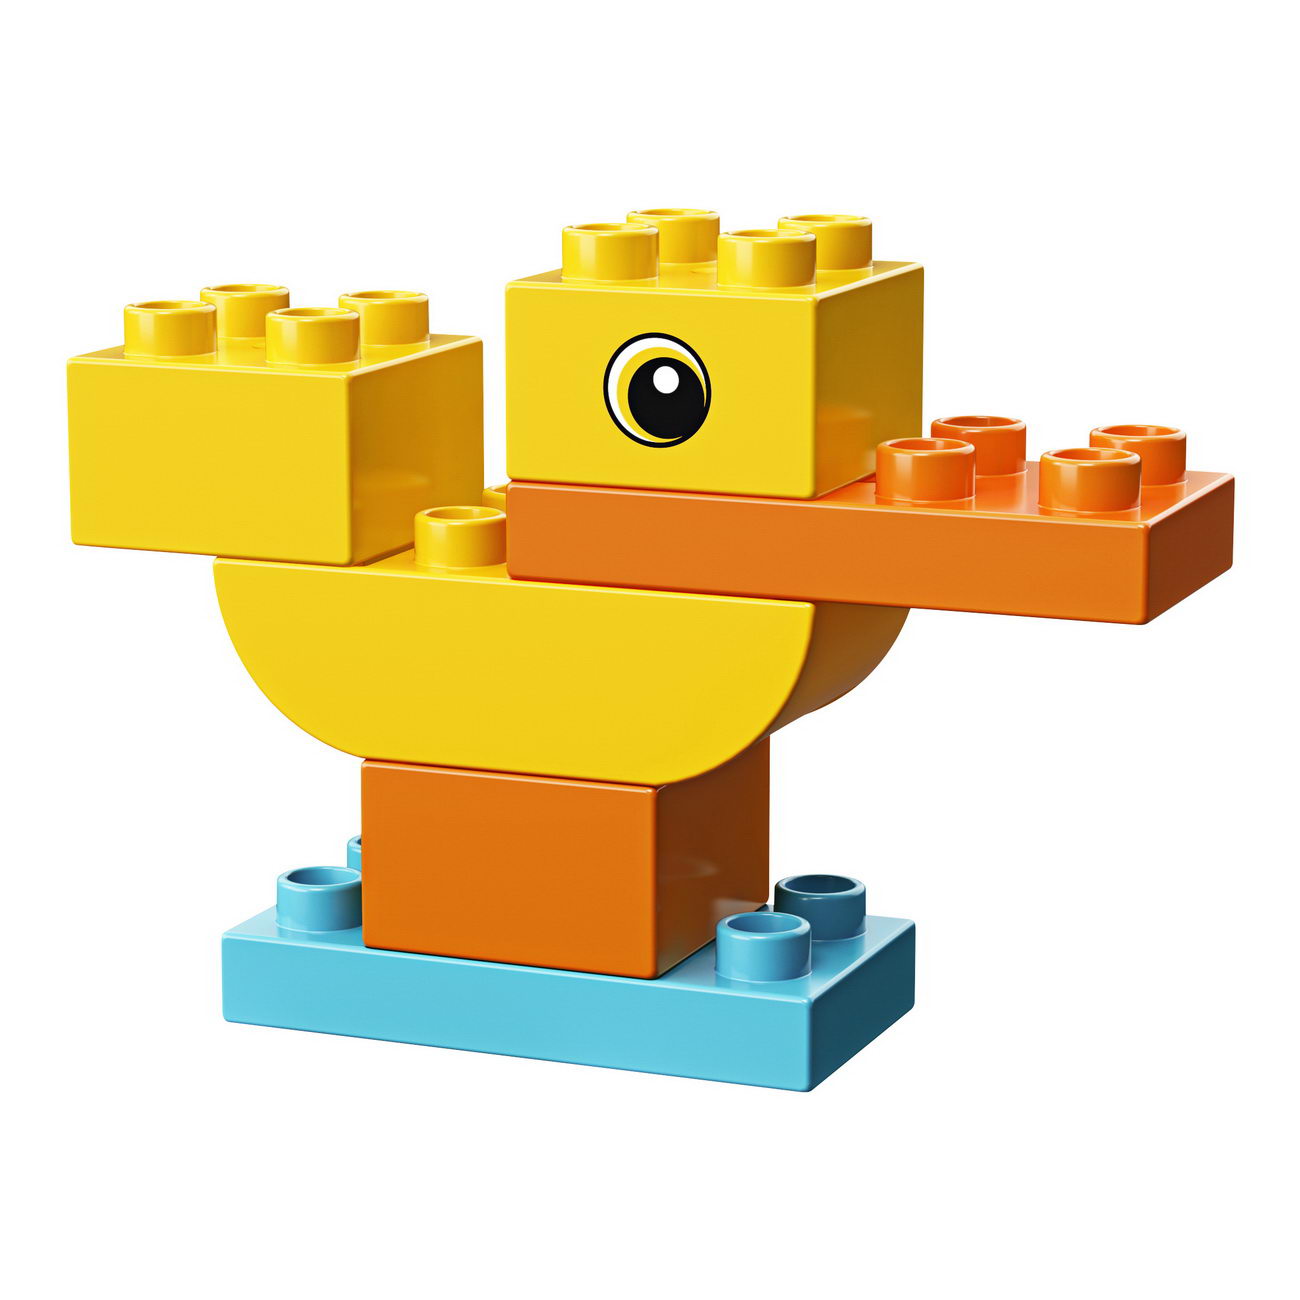 LEGO duplo - Meine erste Ente (30327)